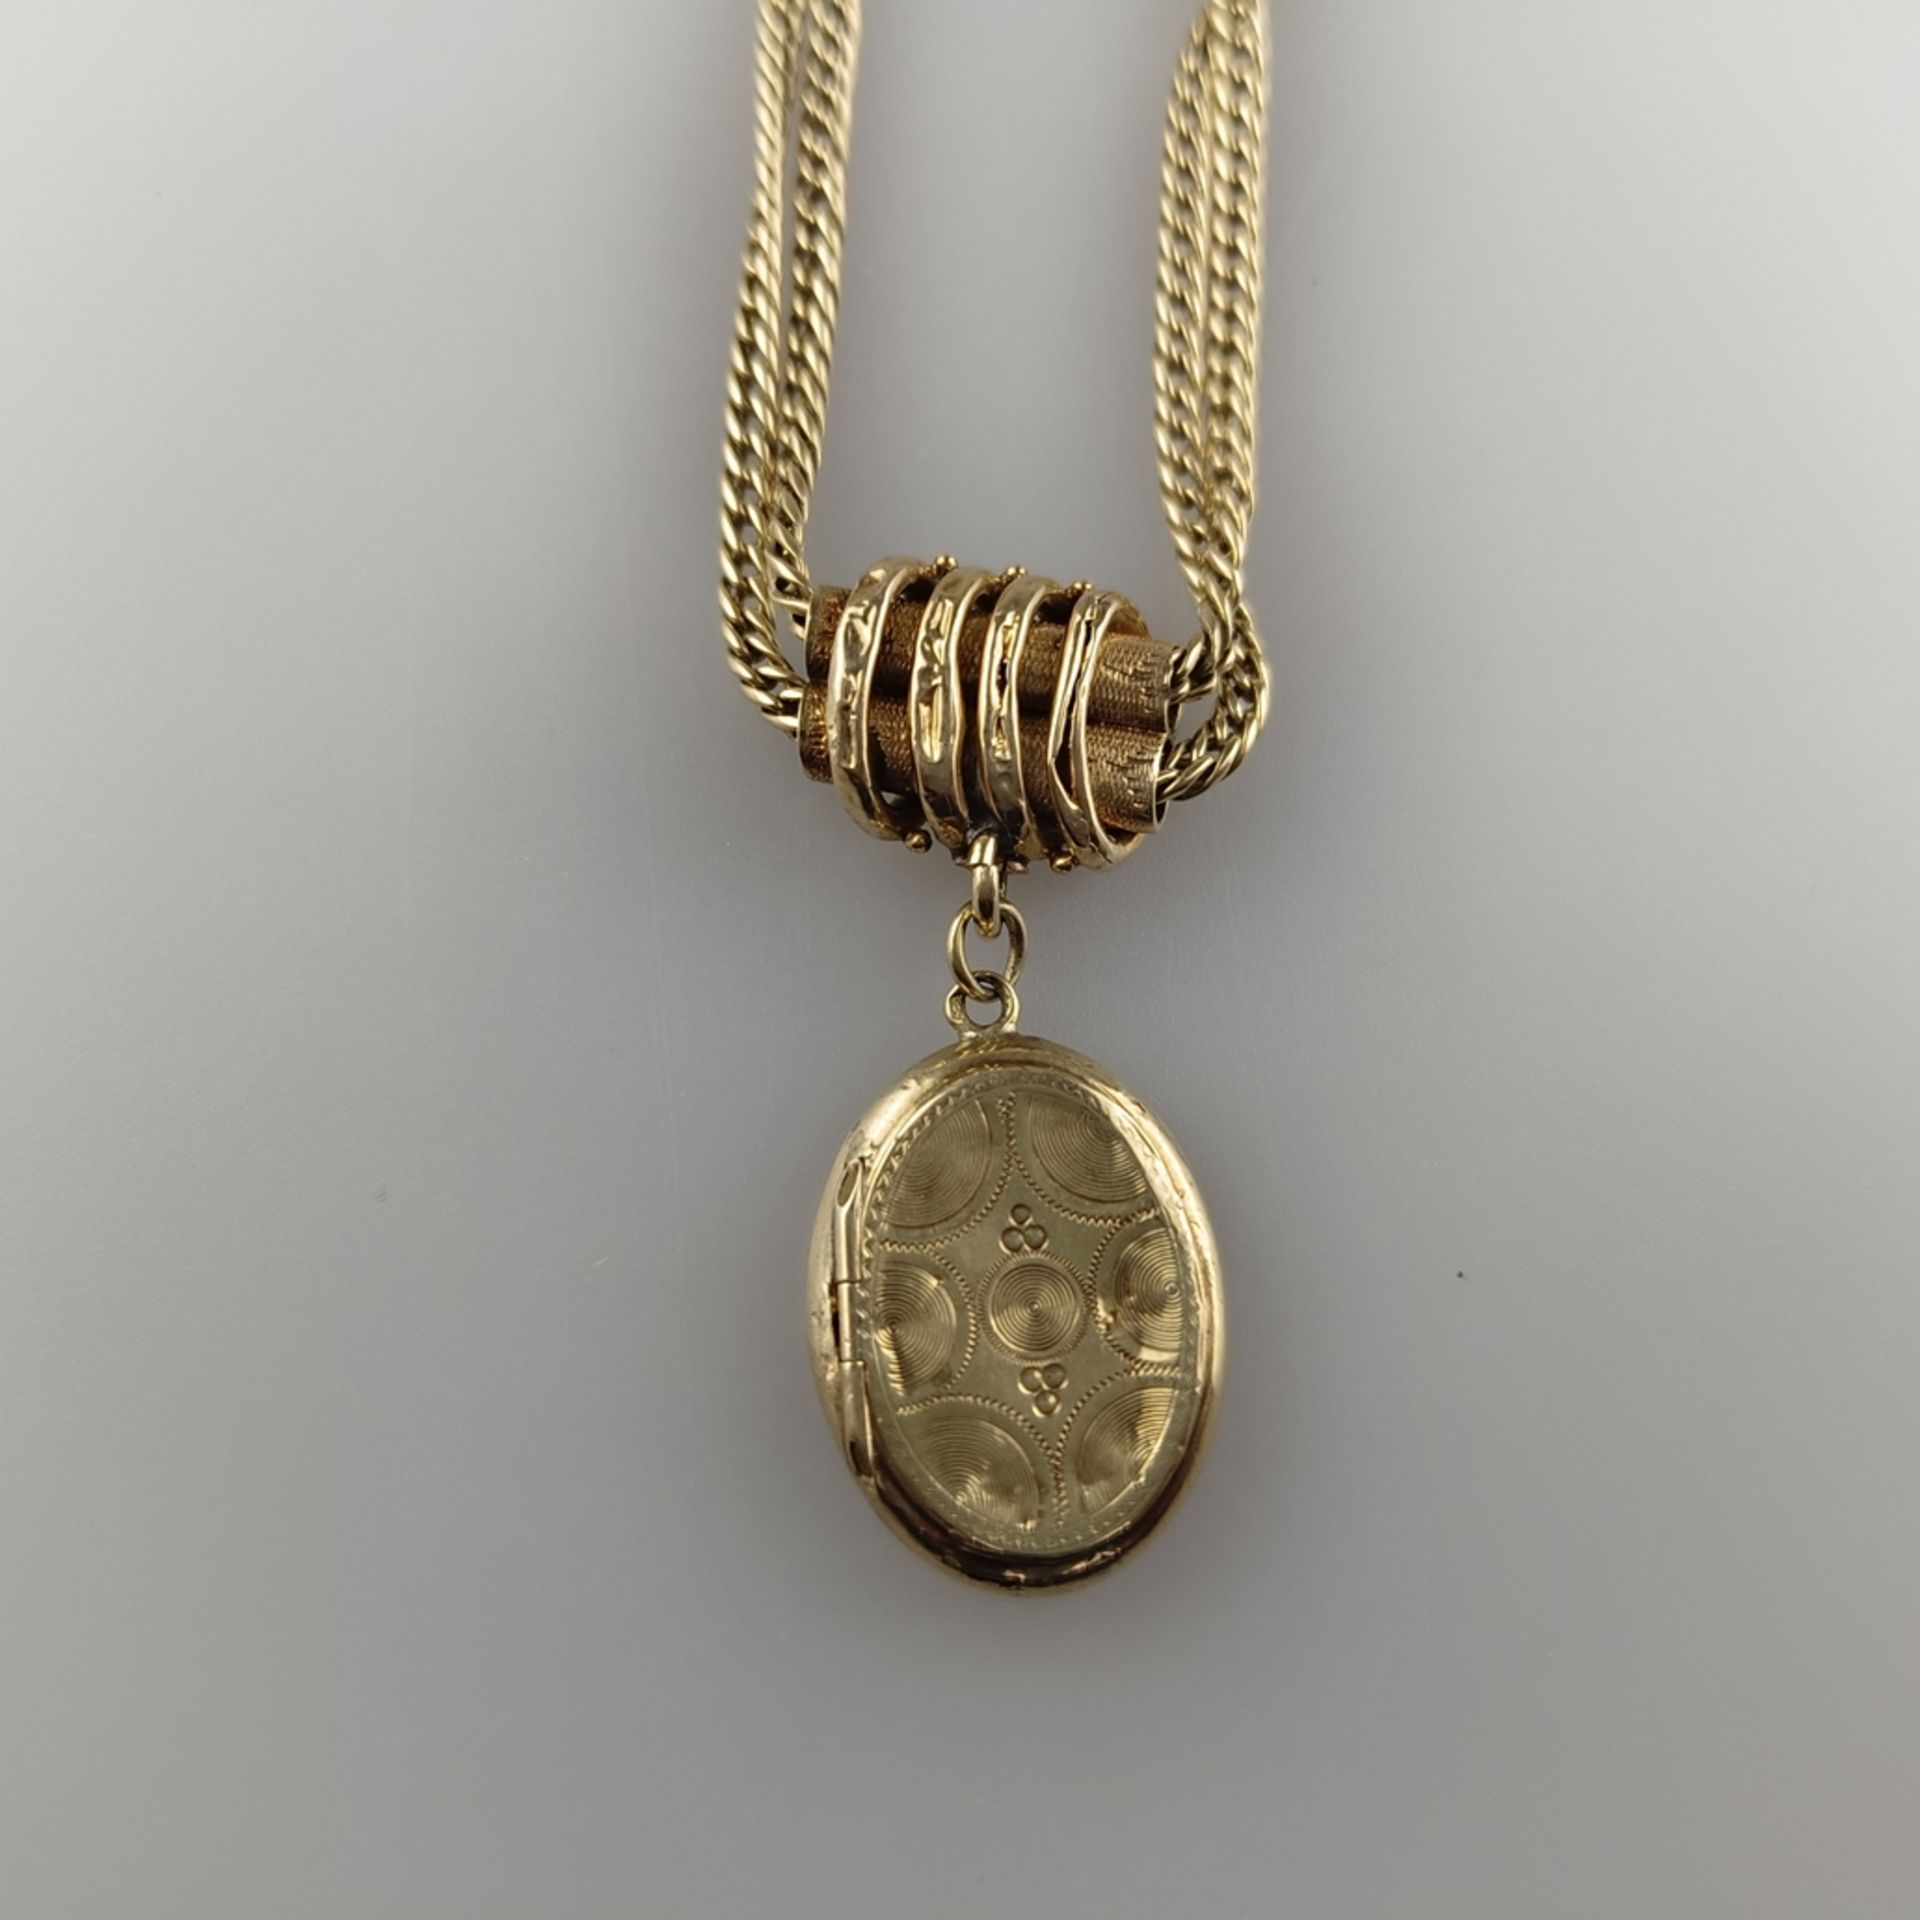 Taschenuhren-Knebelkette - 14K Gelbgold (585/000), mit ovalem Medaillonanhänger aus Schaumgold, L.  - Bild 5 aus 5